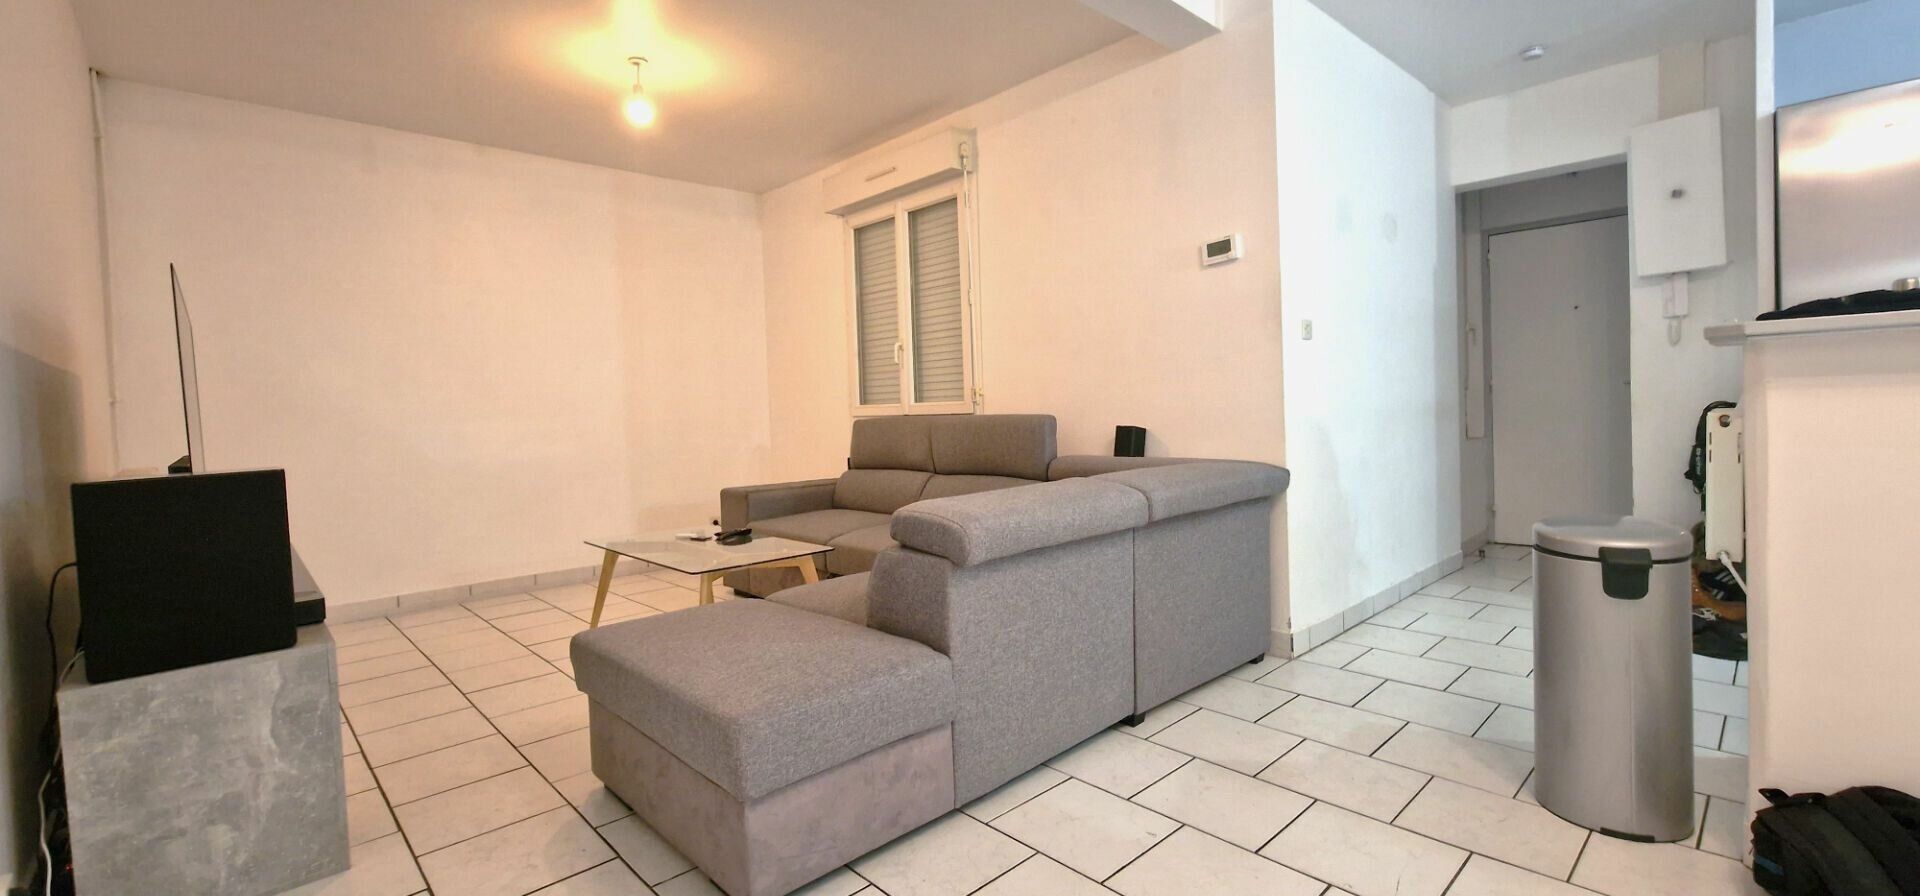 Appartement à vendre 2 59.5m2 à Le Havre vignette-3